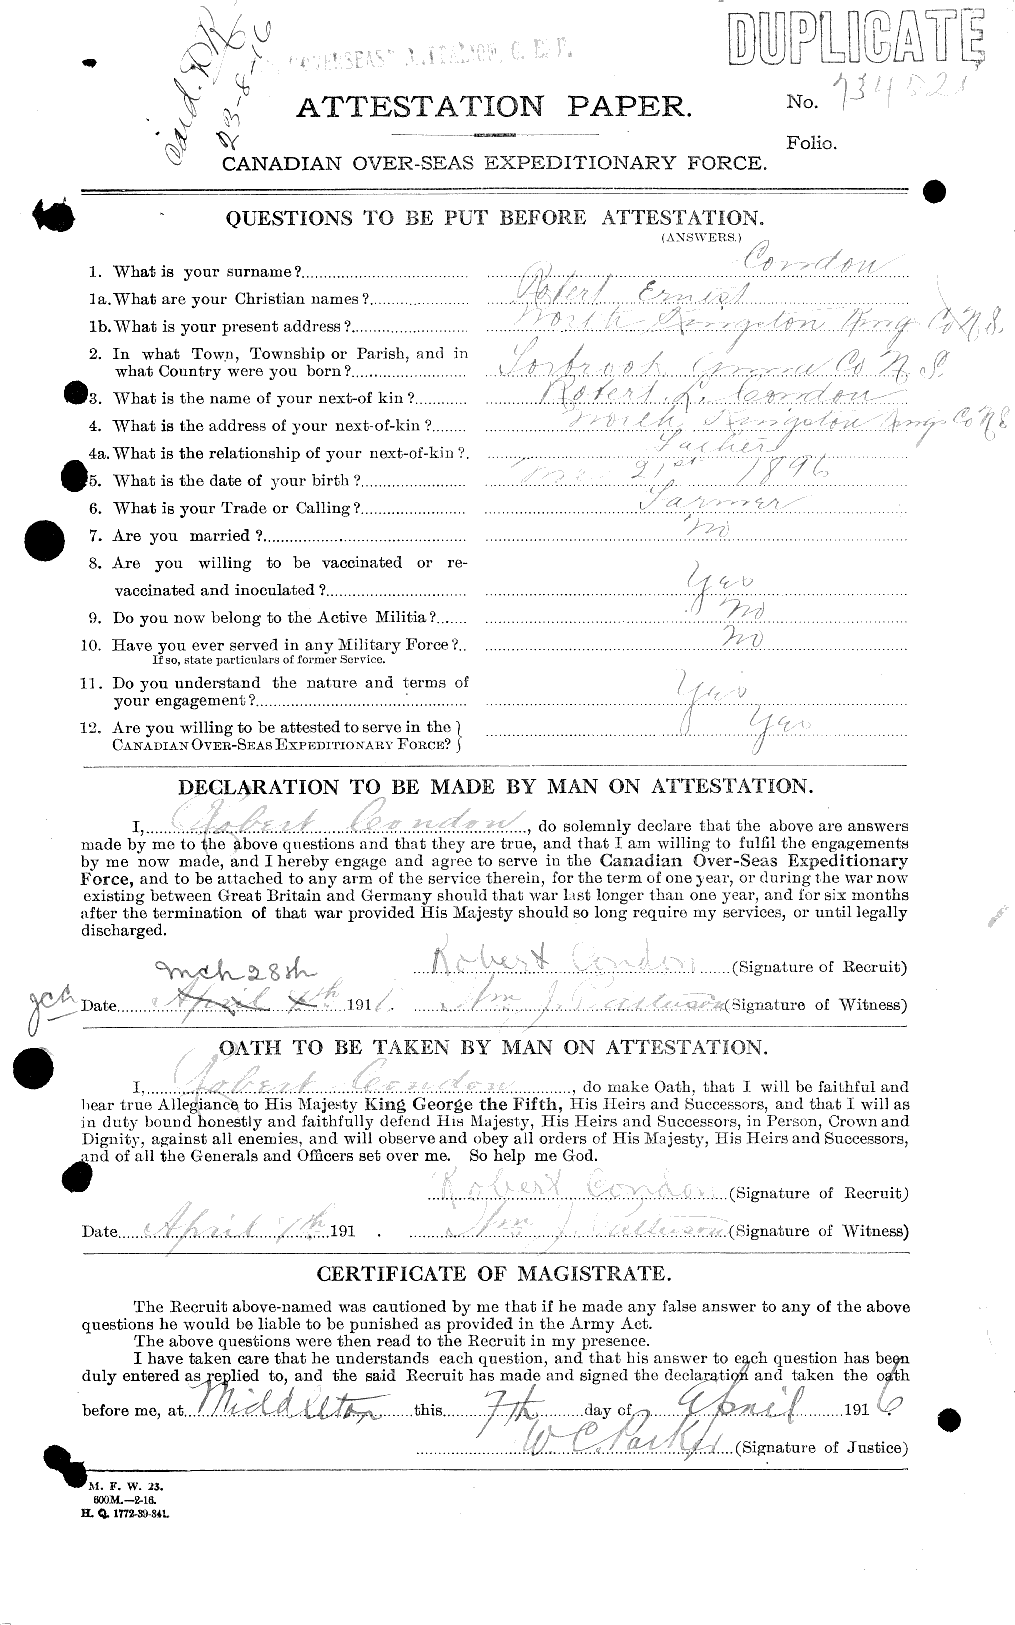 Dossiers du Personnel de la Première Guerre mondiale - CEC 041037a